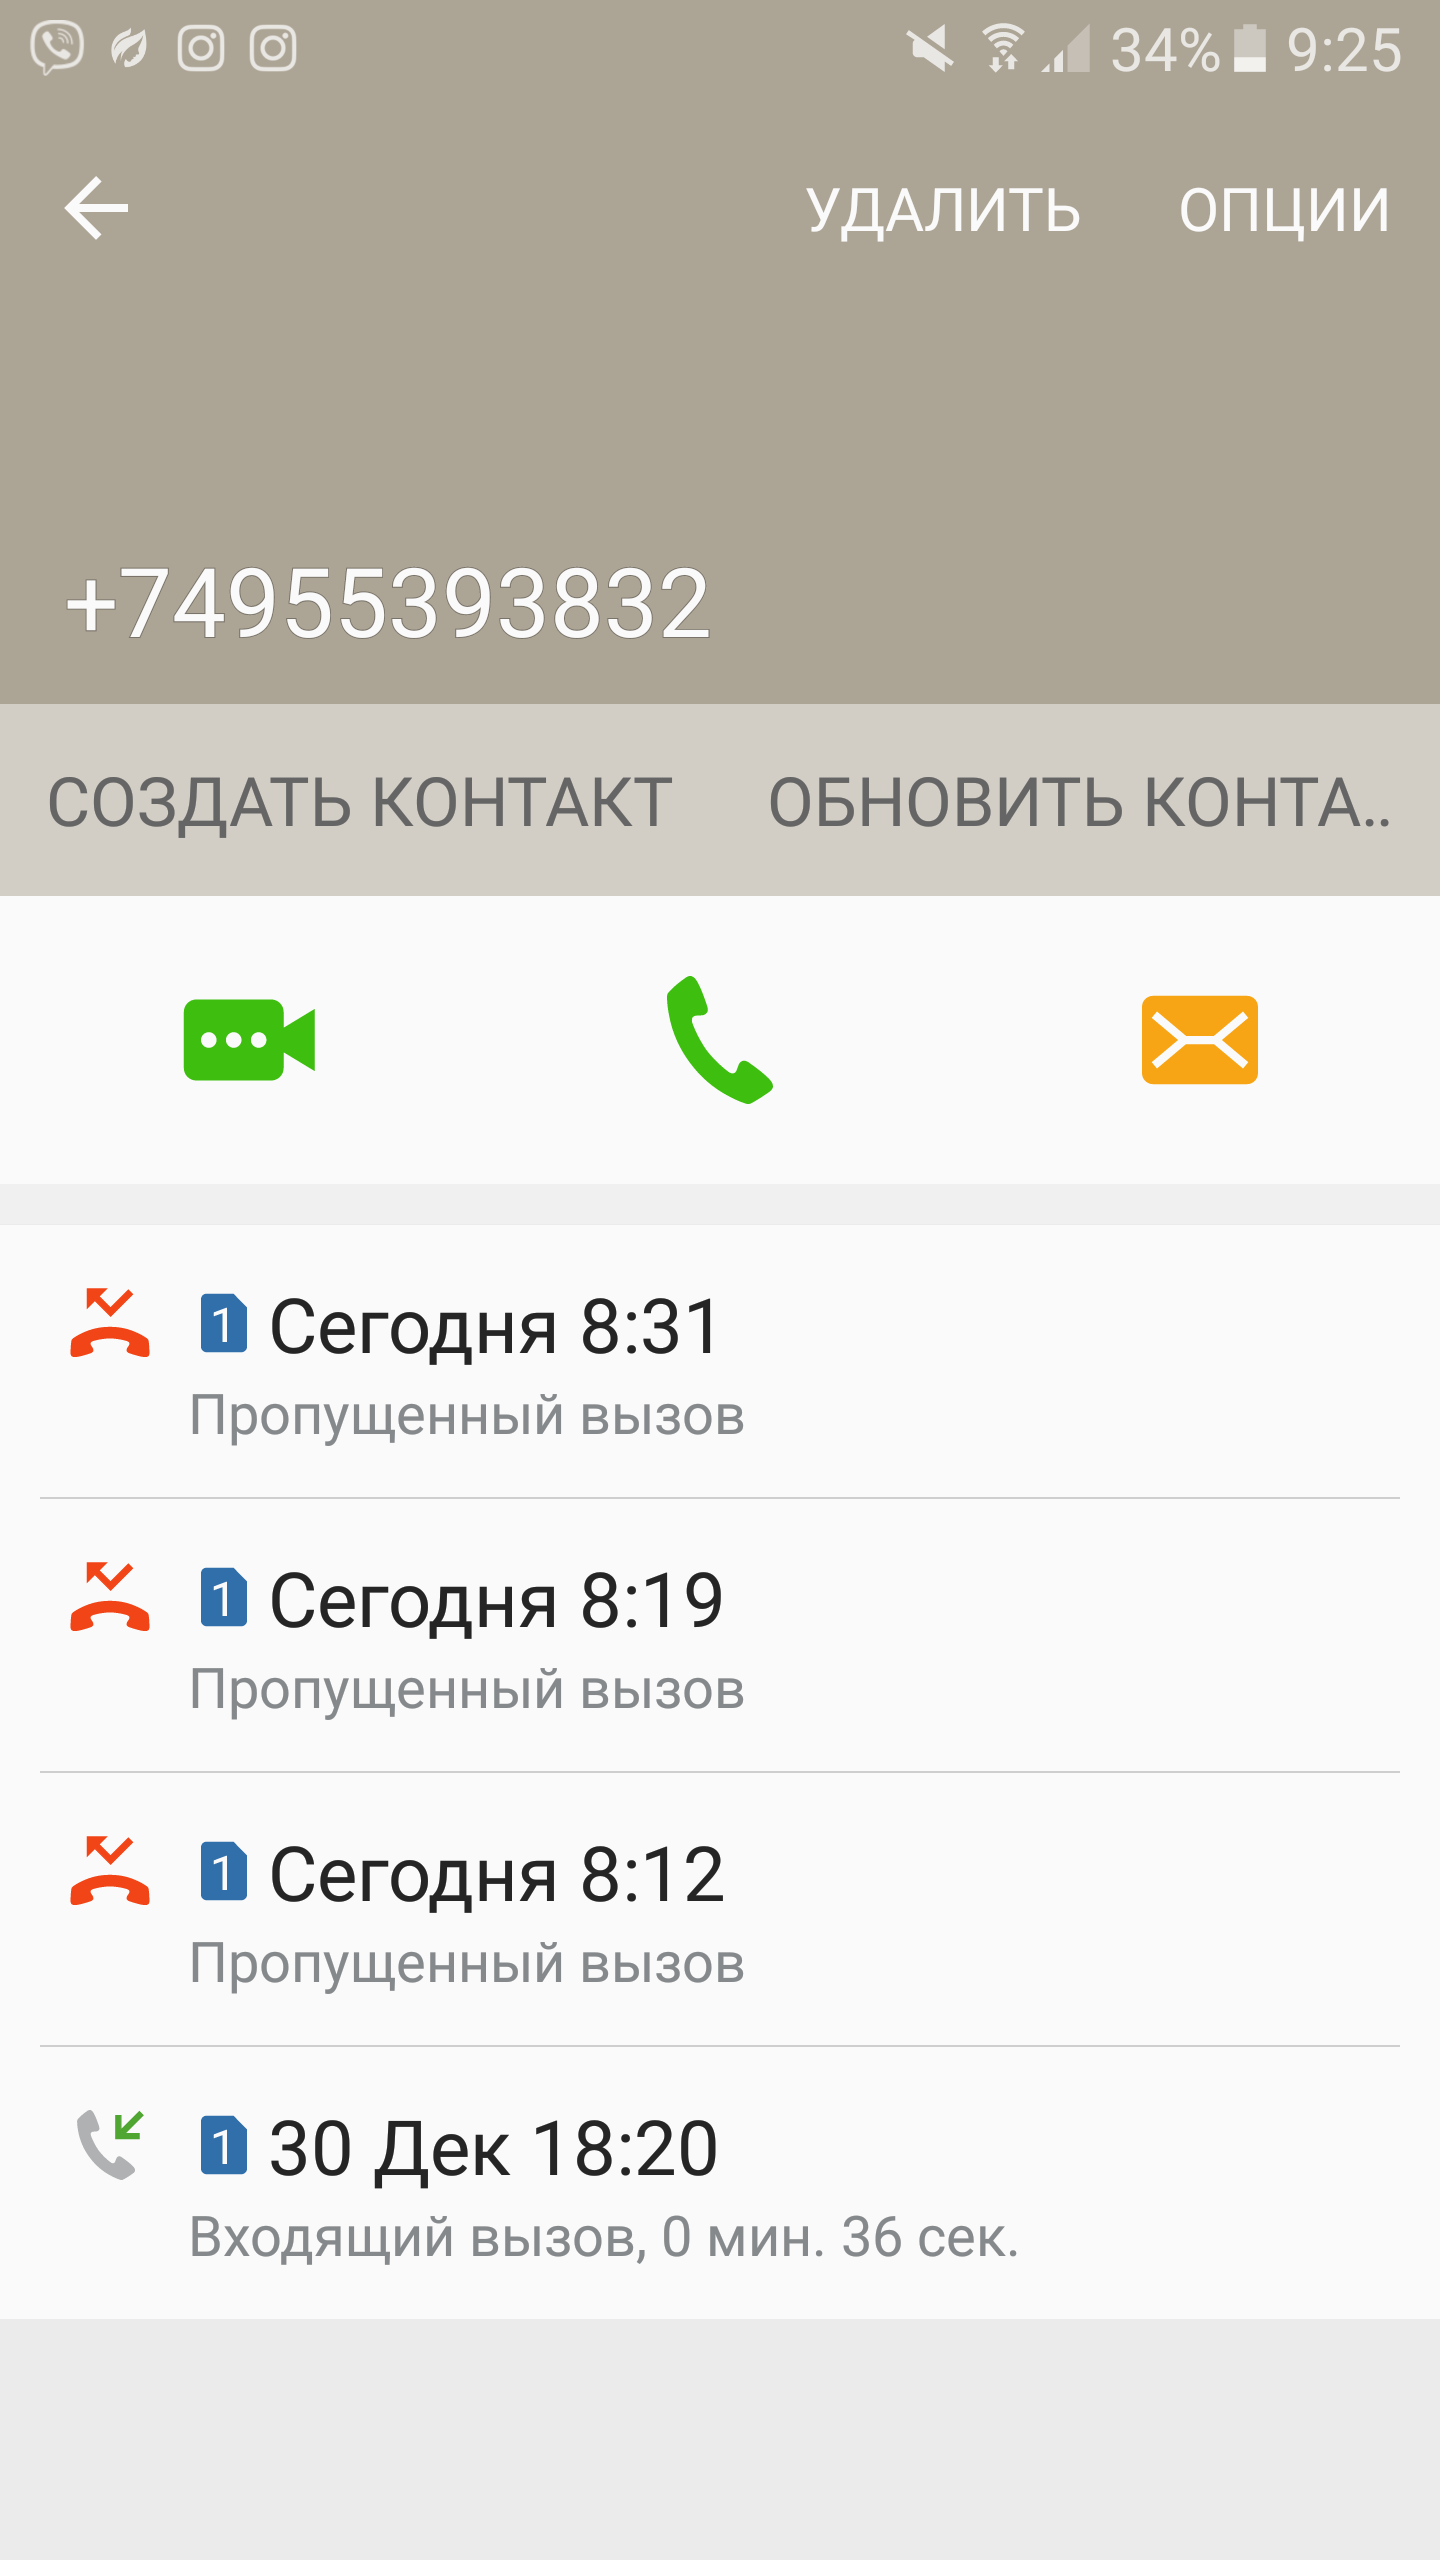 Саяногорск Инфо - screenshot_20170112-092530.png, Скачано: 297